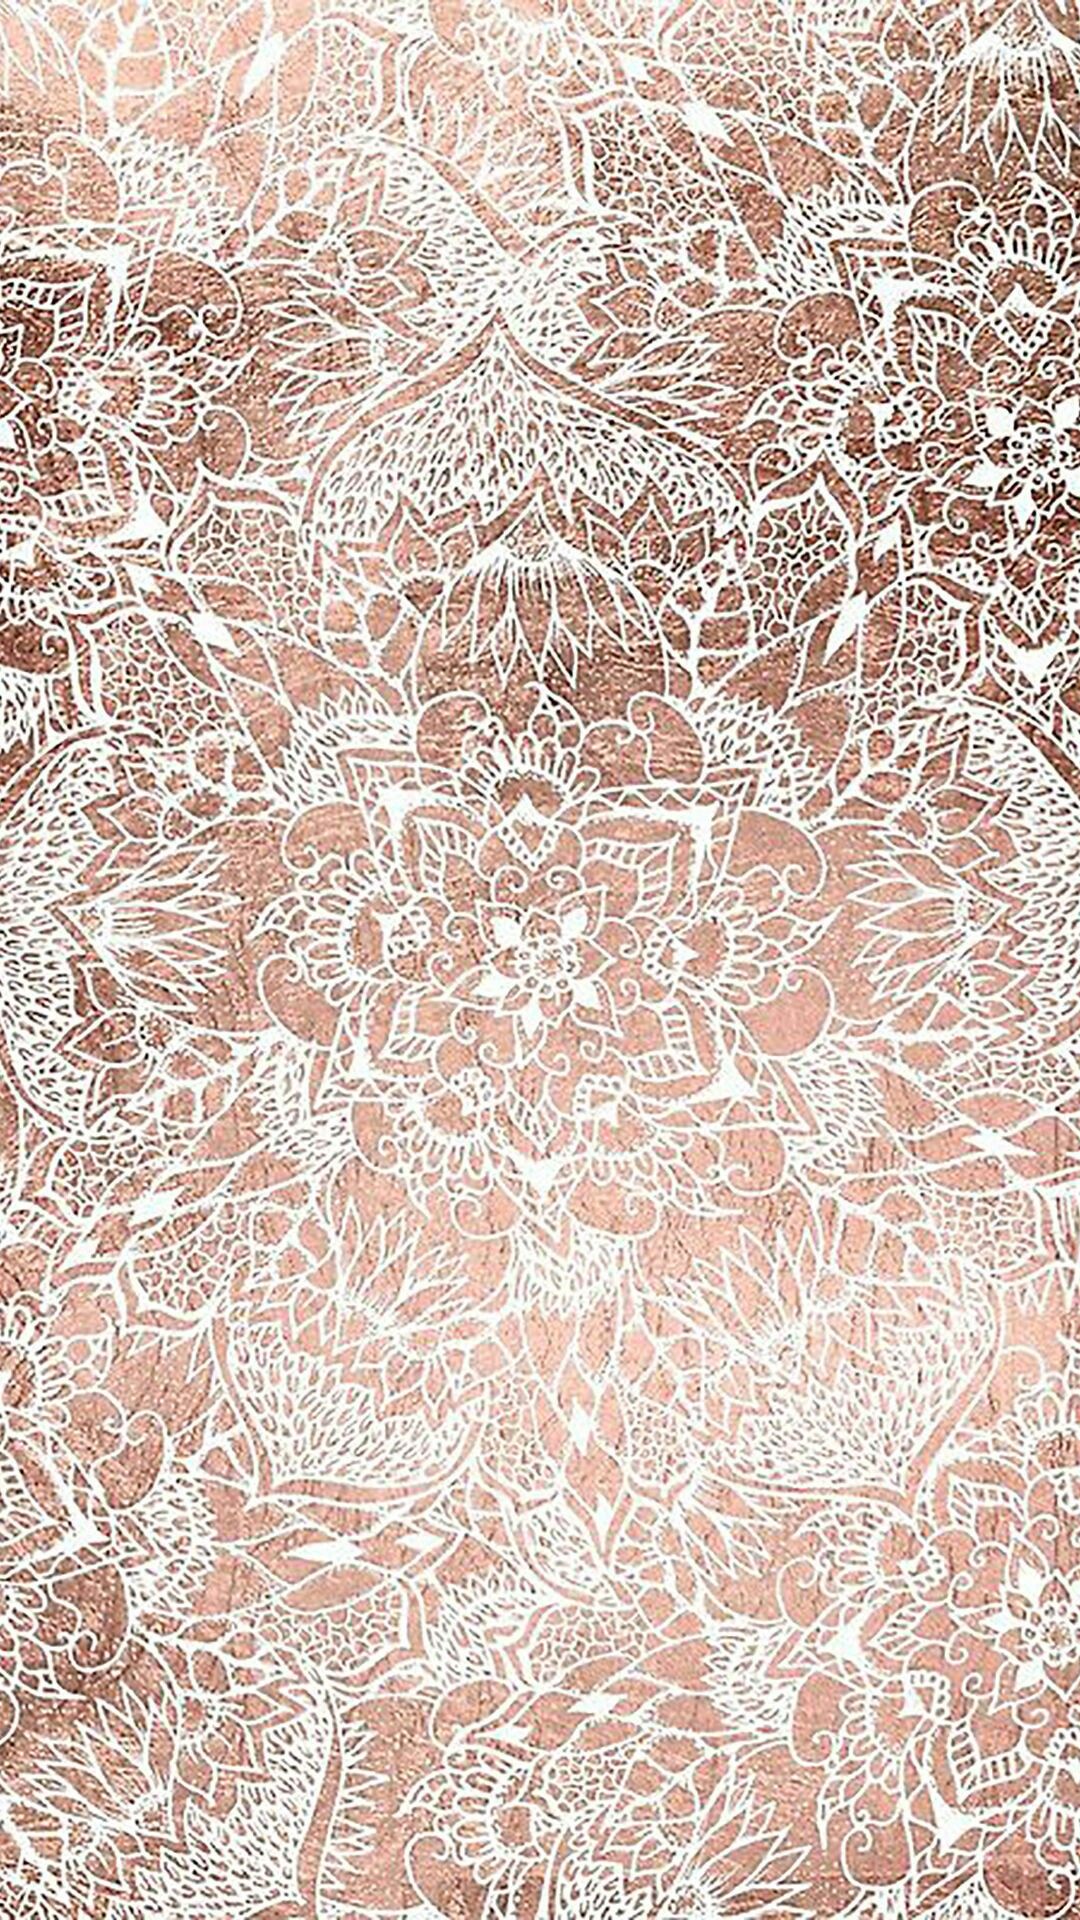 lace wallpaper,pattern,brown,peach,textile,pattern